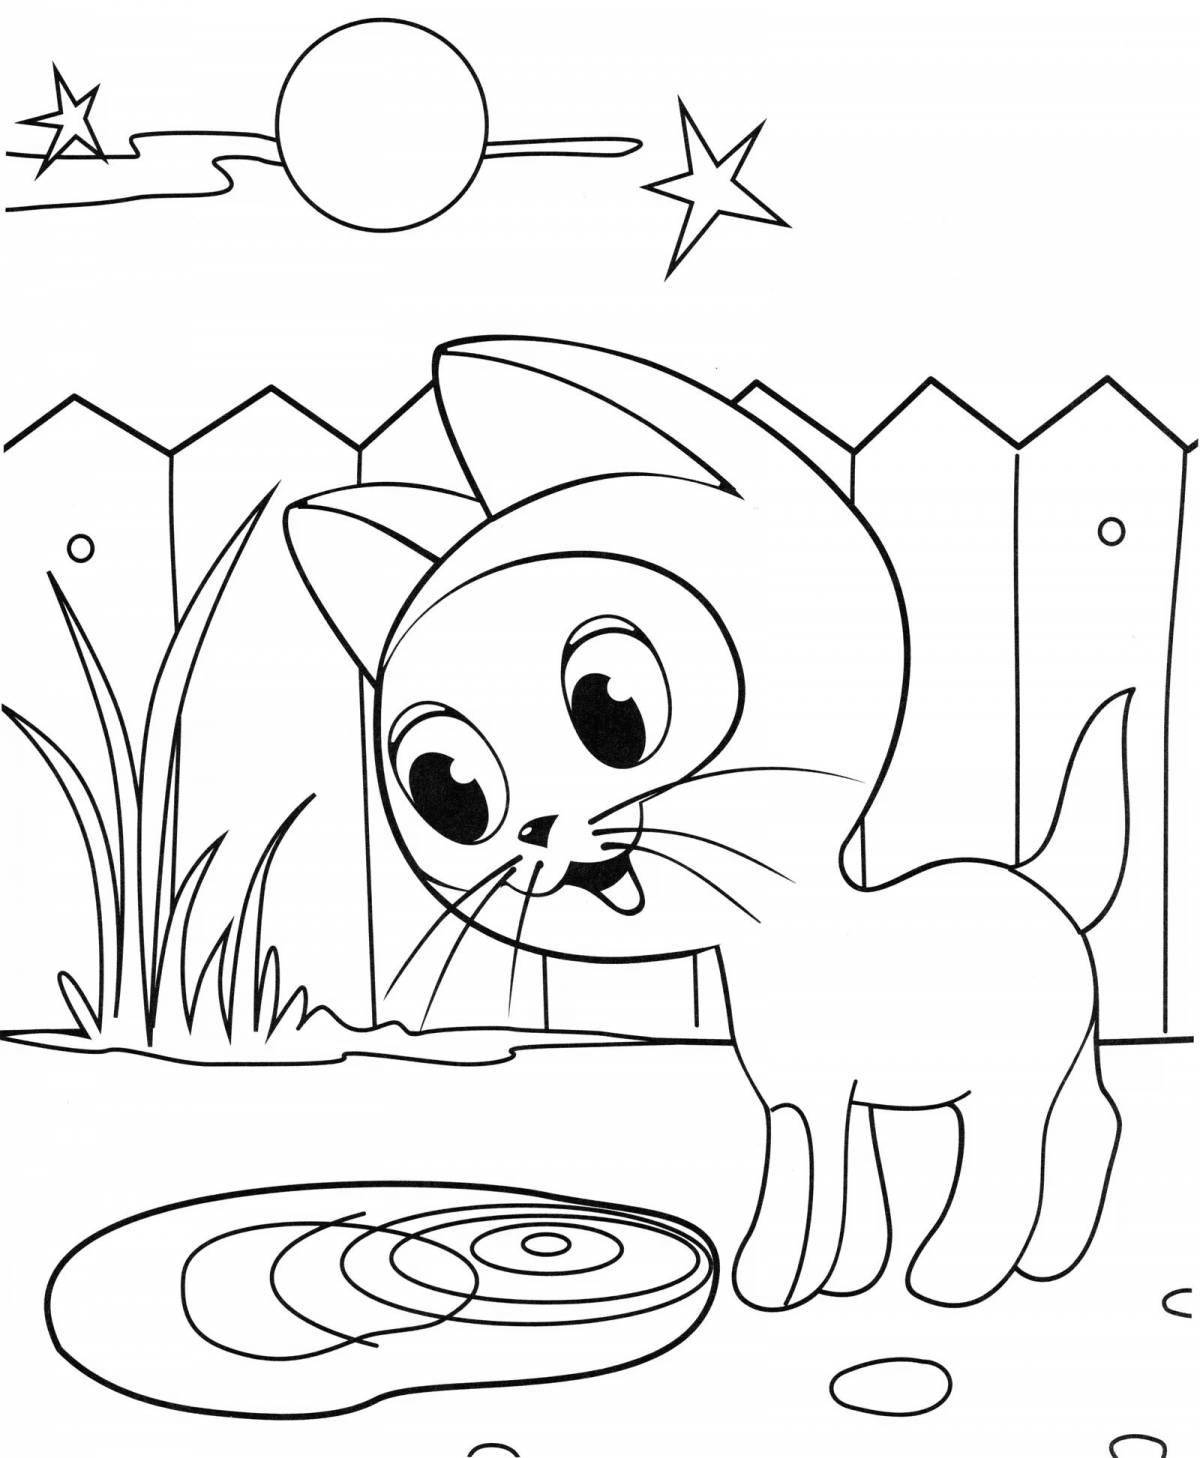 Adorable kitten coloring book